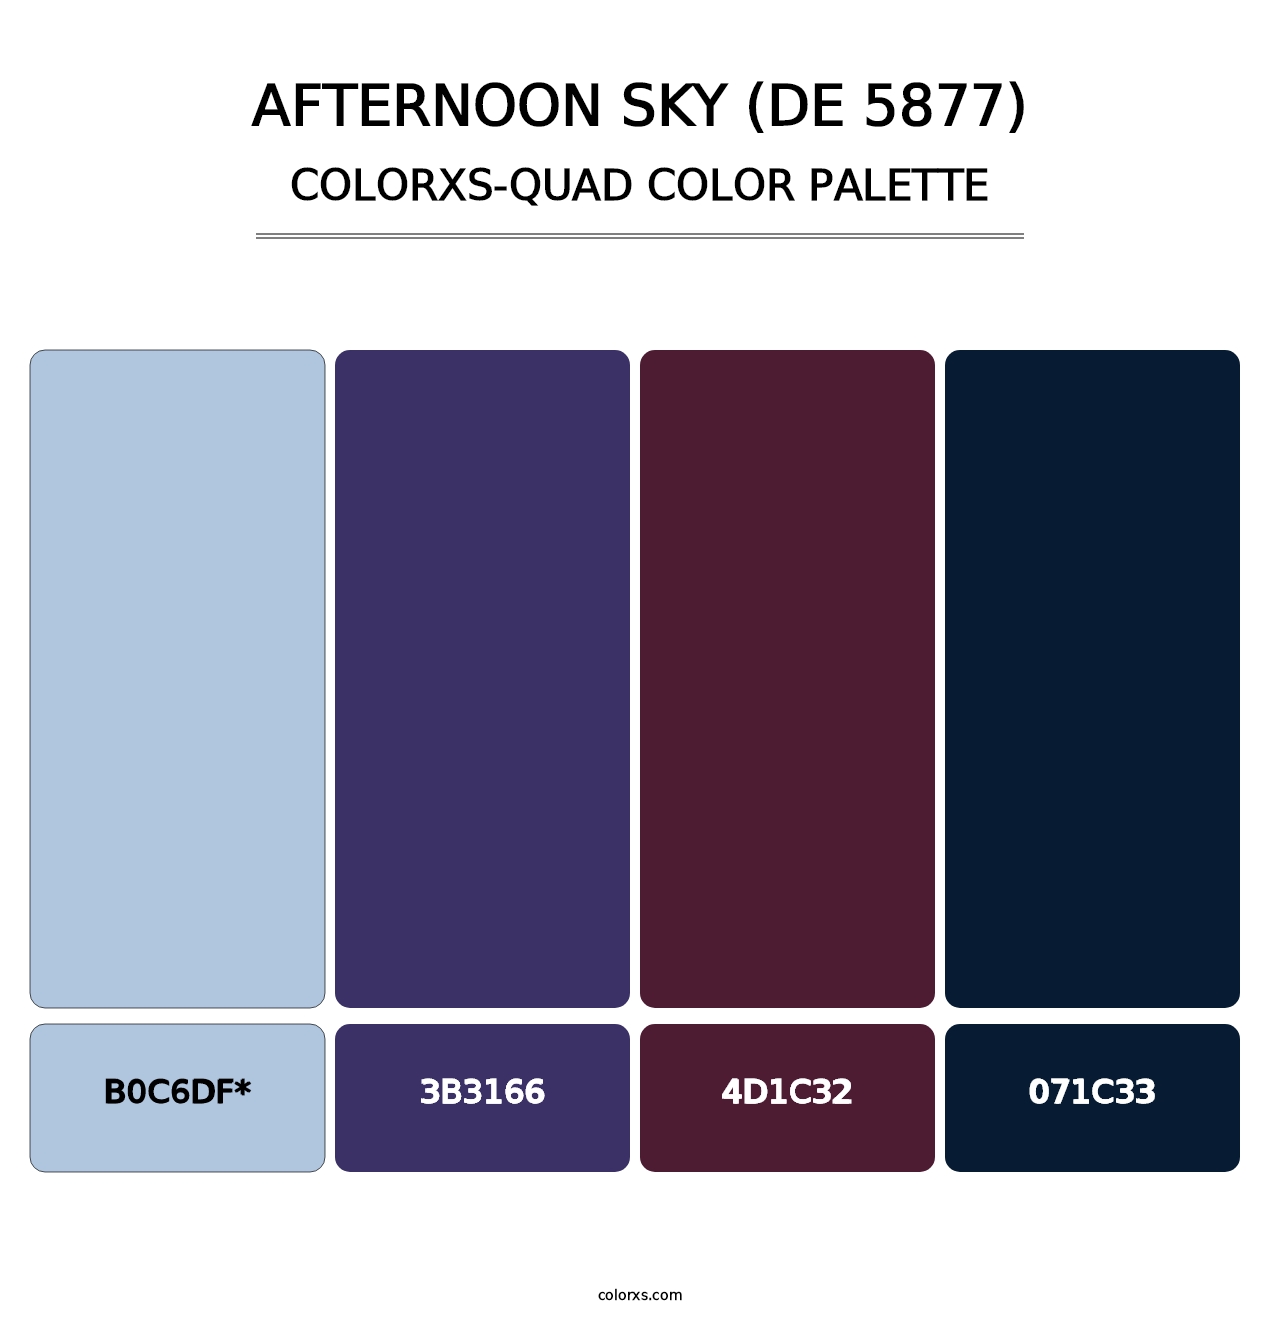 Afternoon Sky (DE 5877) - Colorxs Quad Palette